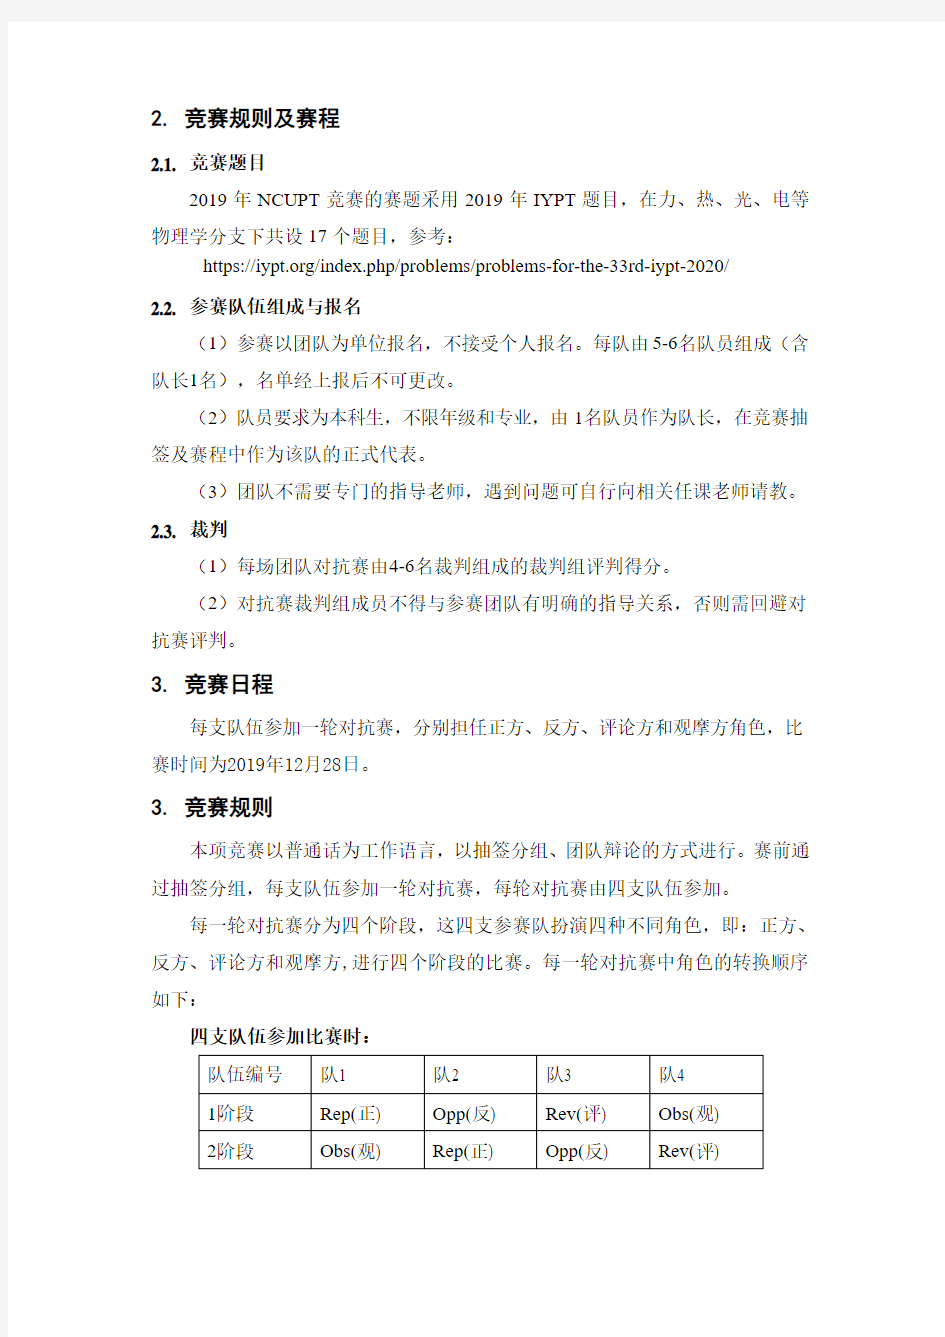 南昌大学物理学术竞赛NCUPT简介及比赛规则